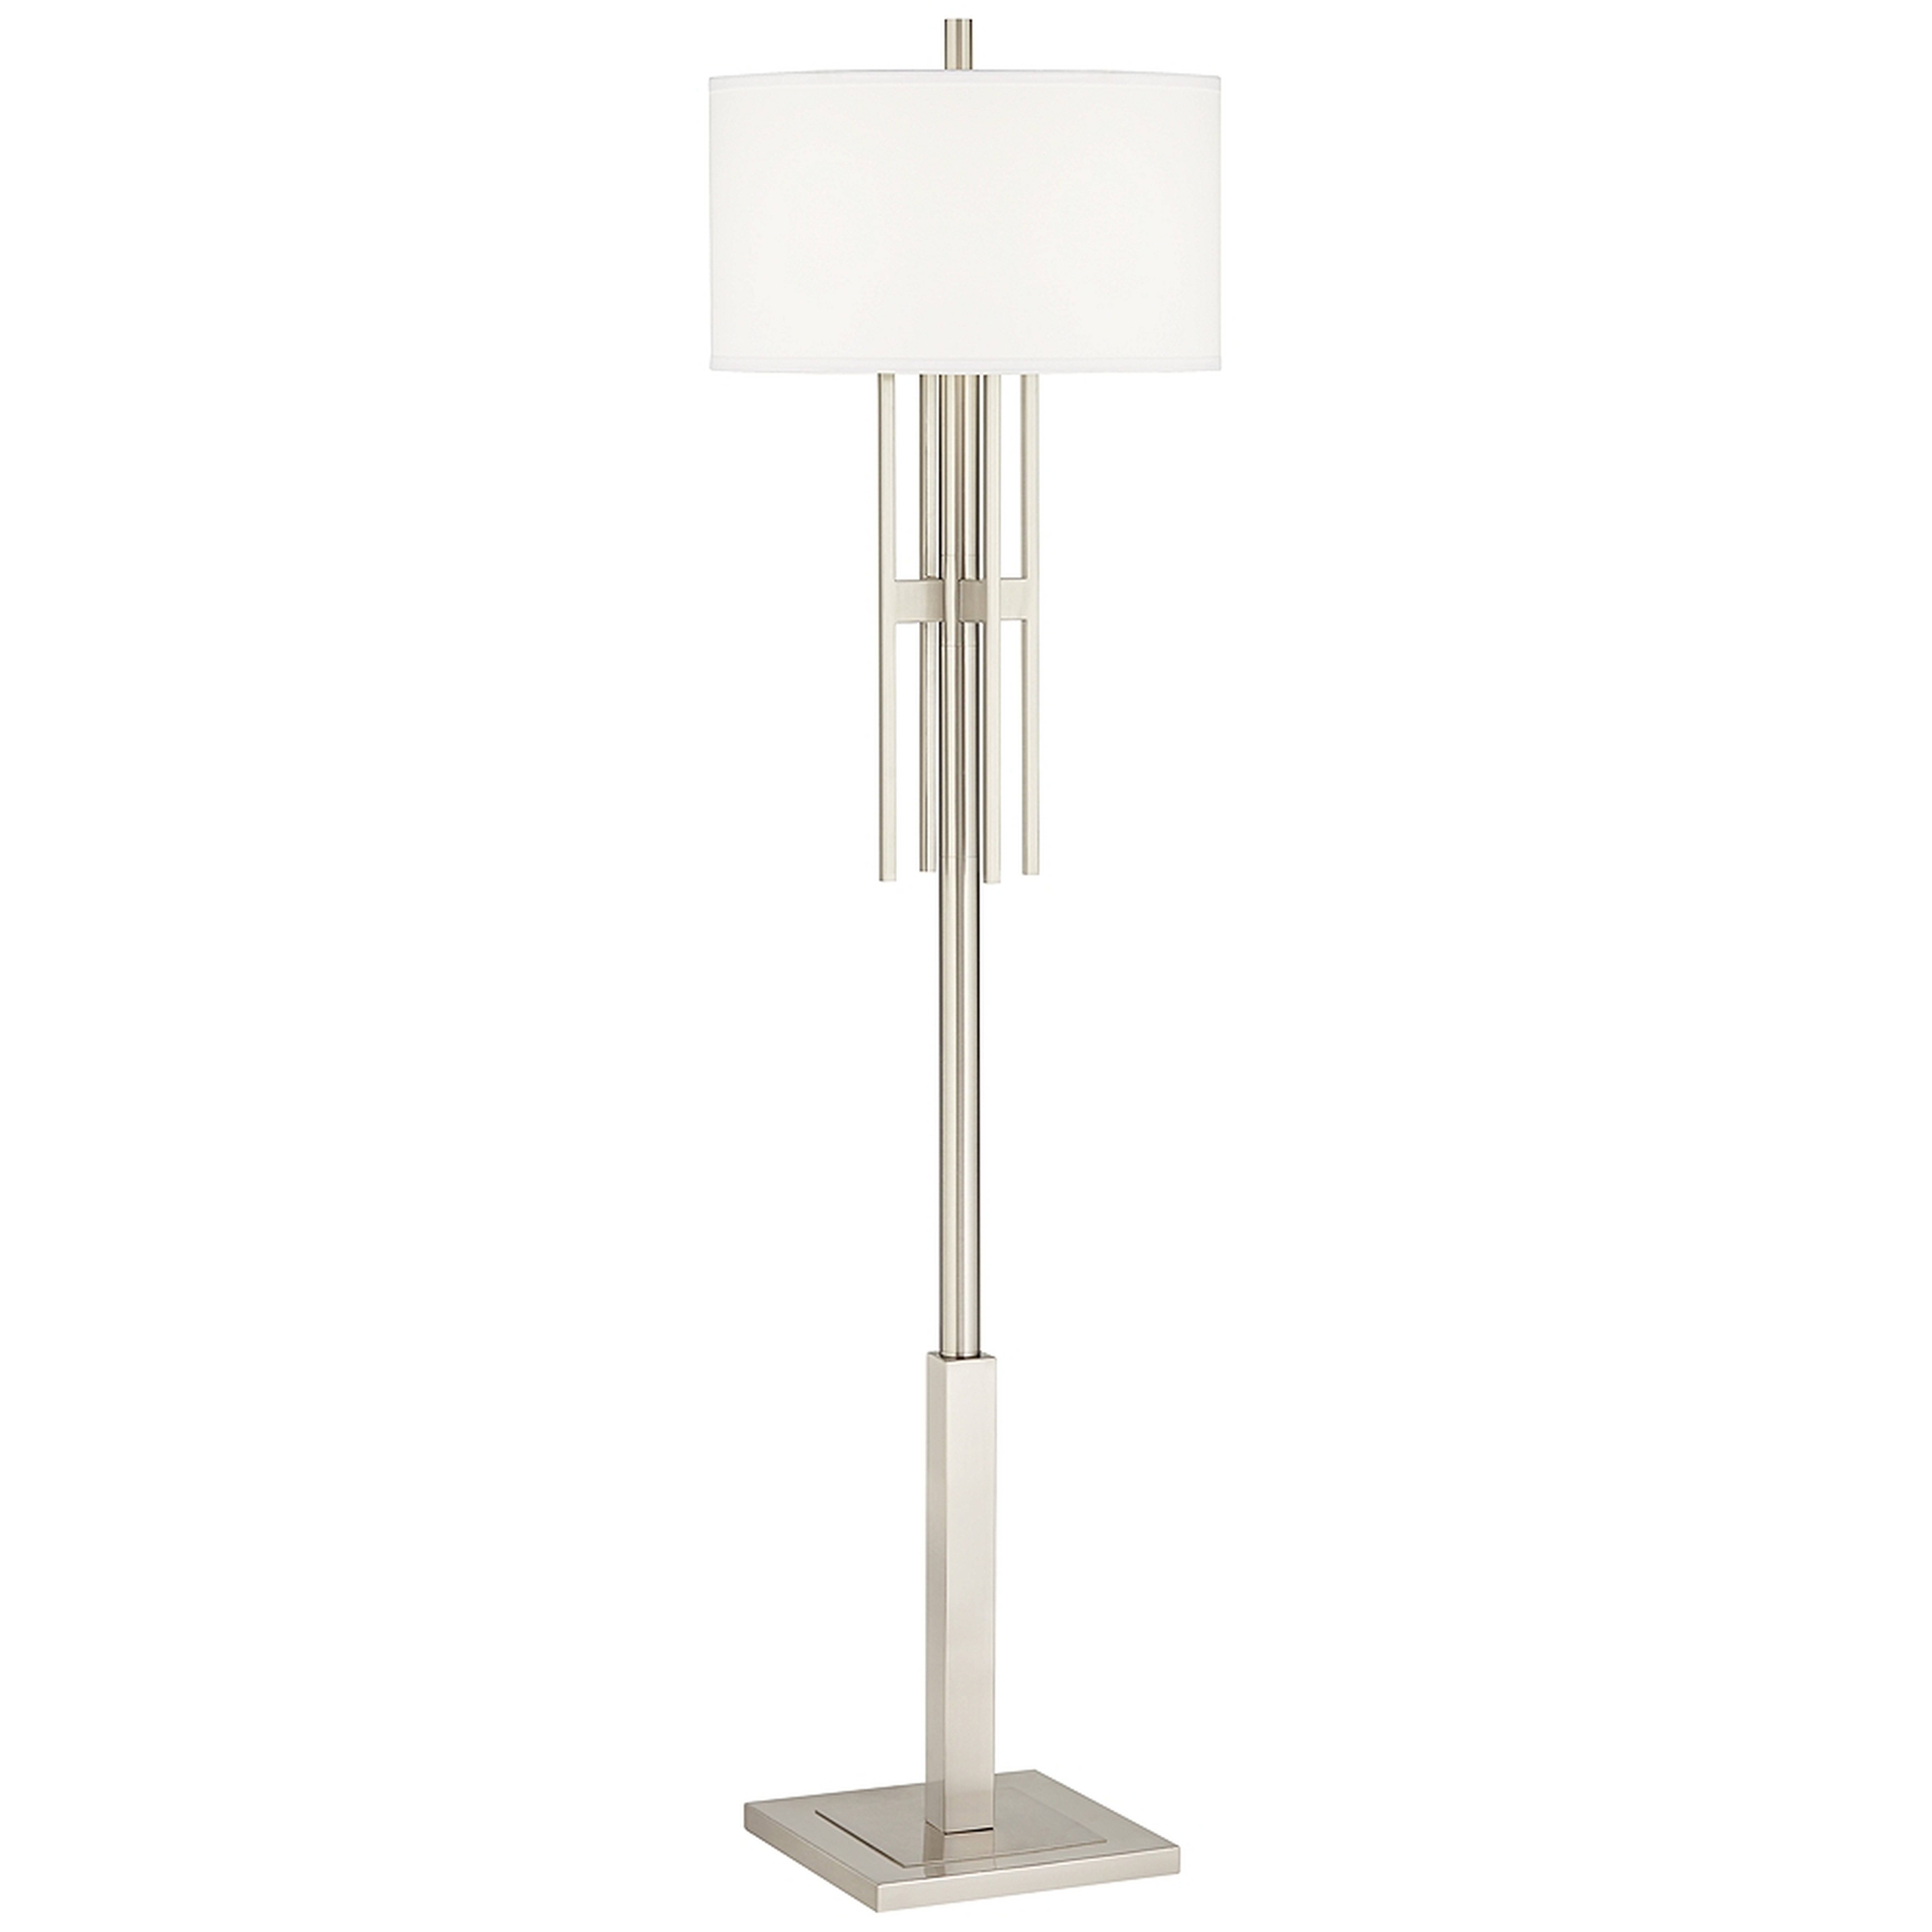 Possini Euro Acadia Brushed Nickel Floor Lamp - Style # 89Y28 - Lamps Plus